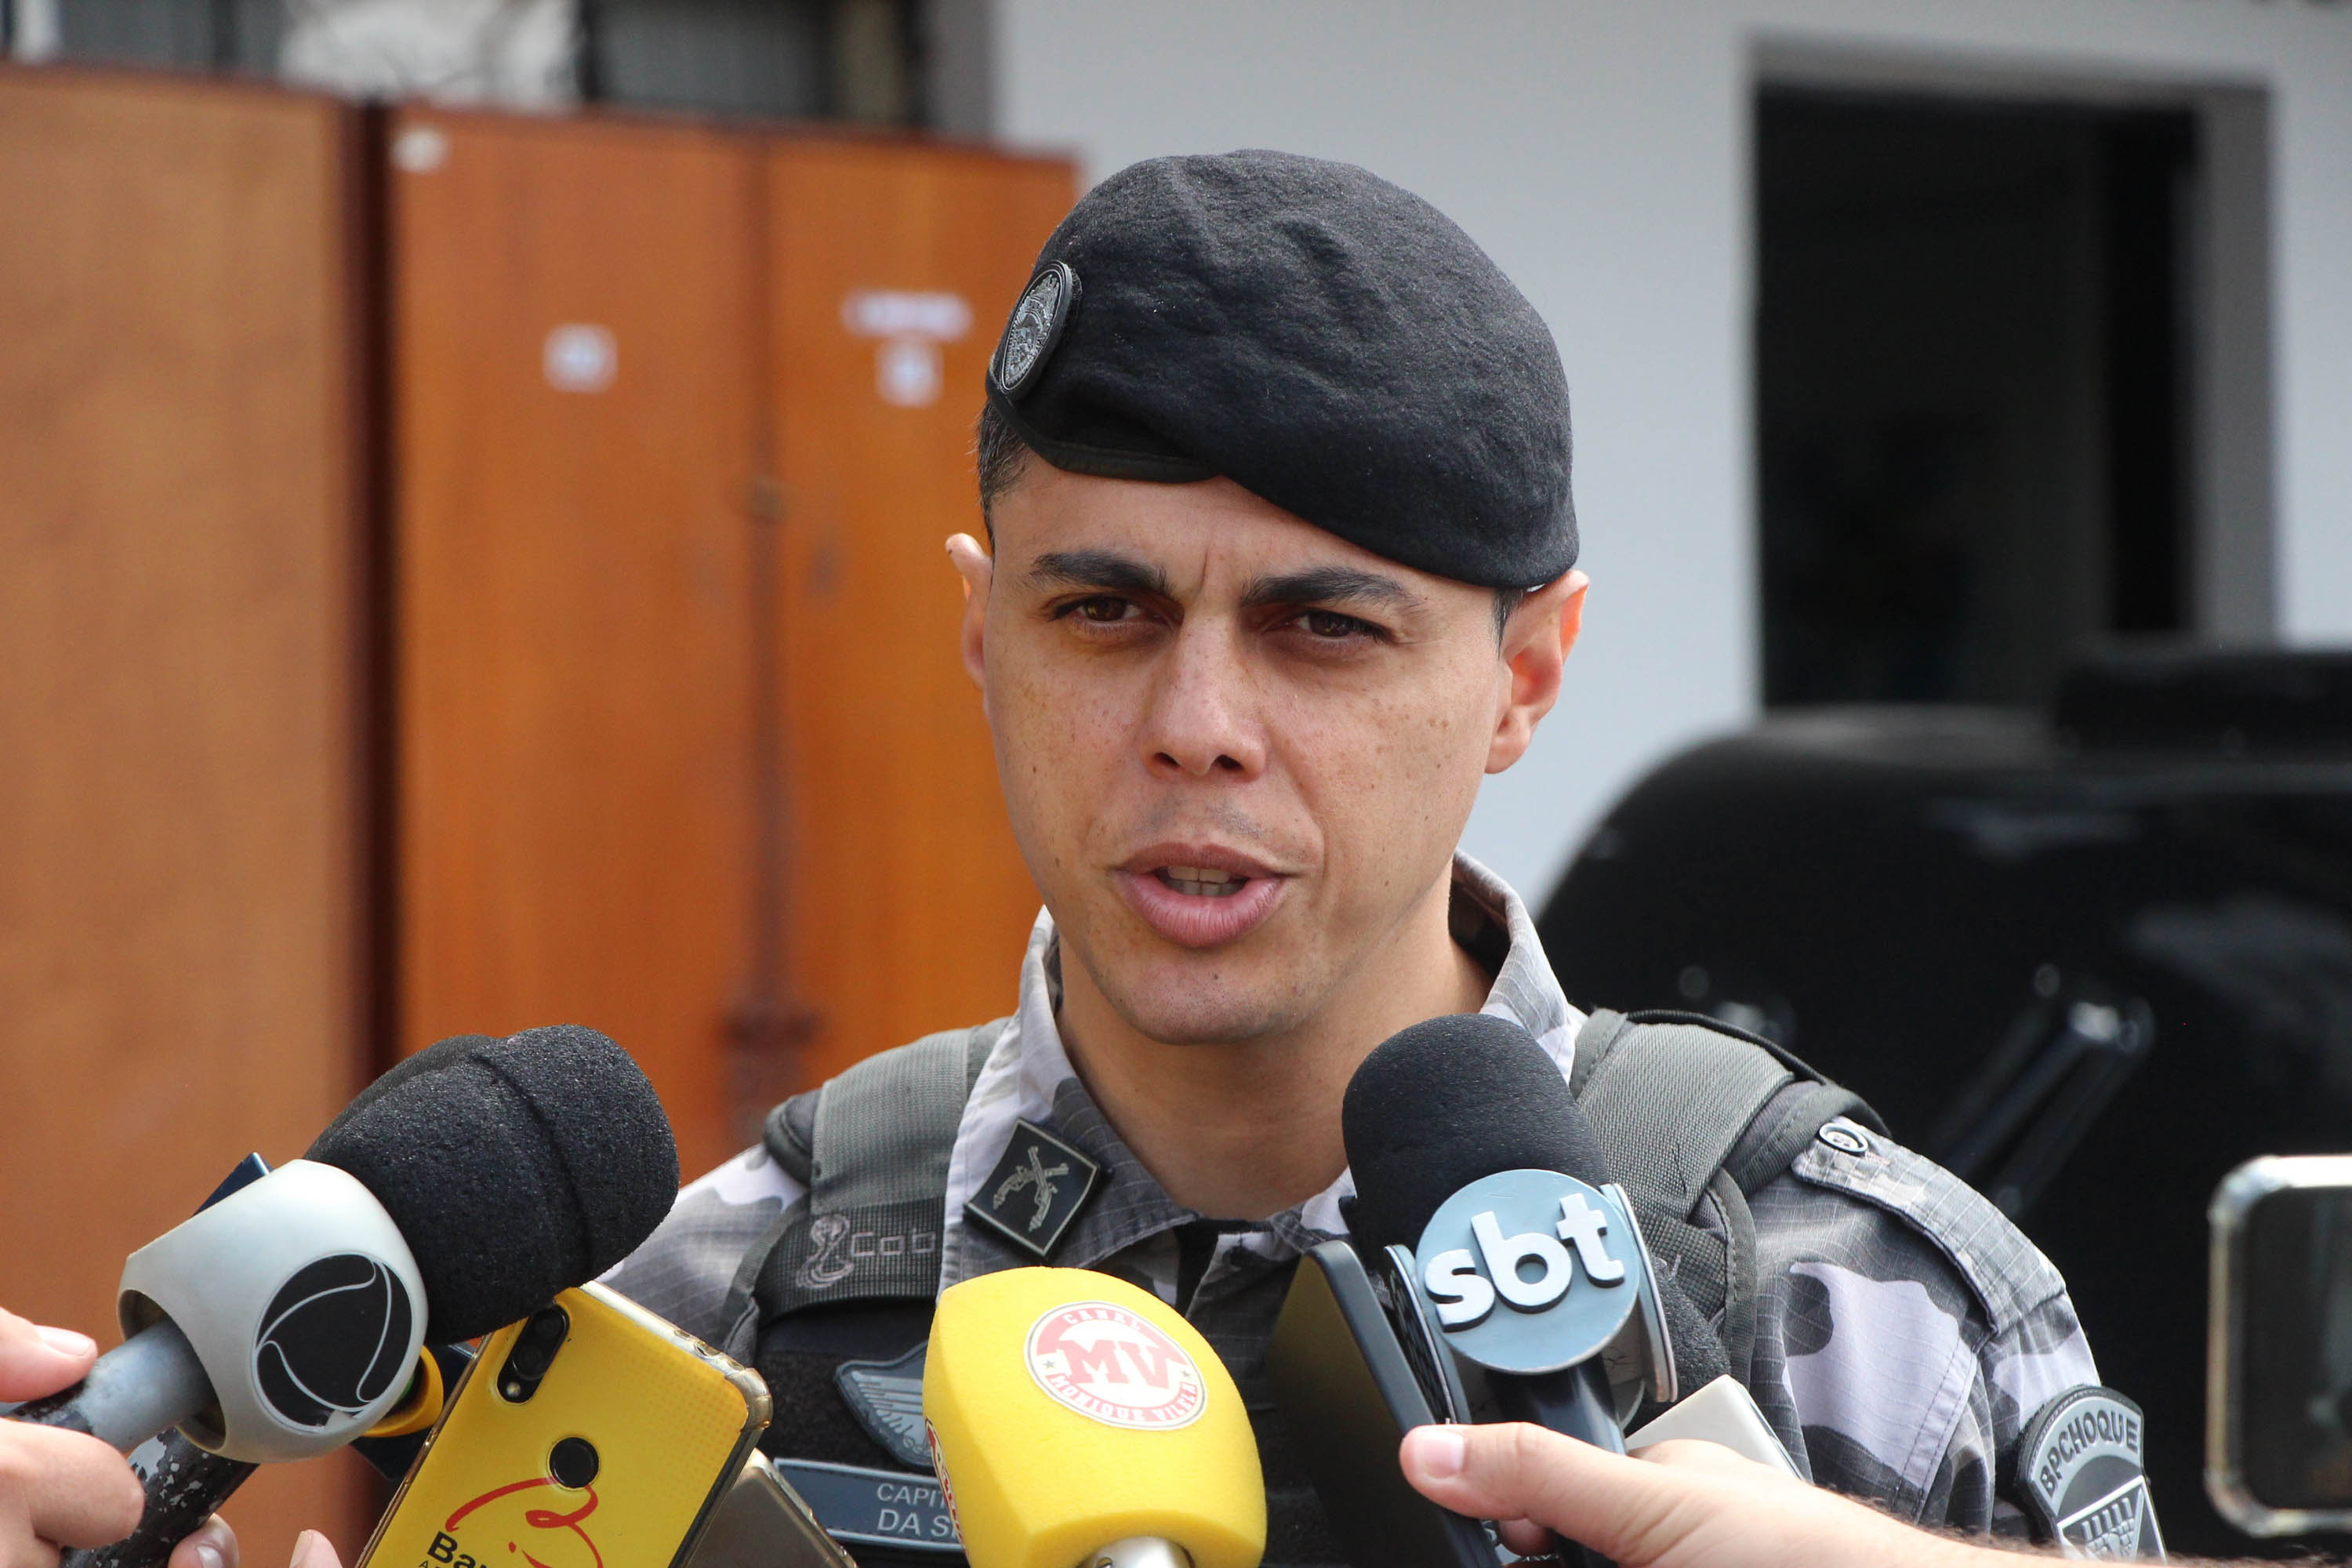 PM divulga esquema de segurança para o Athletiba deste domingo Foto: Polícia Militar do Paraná